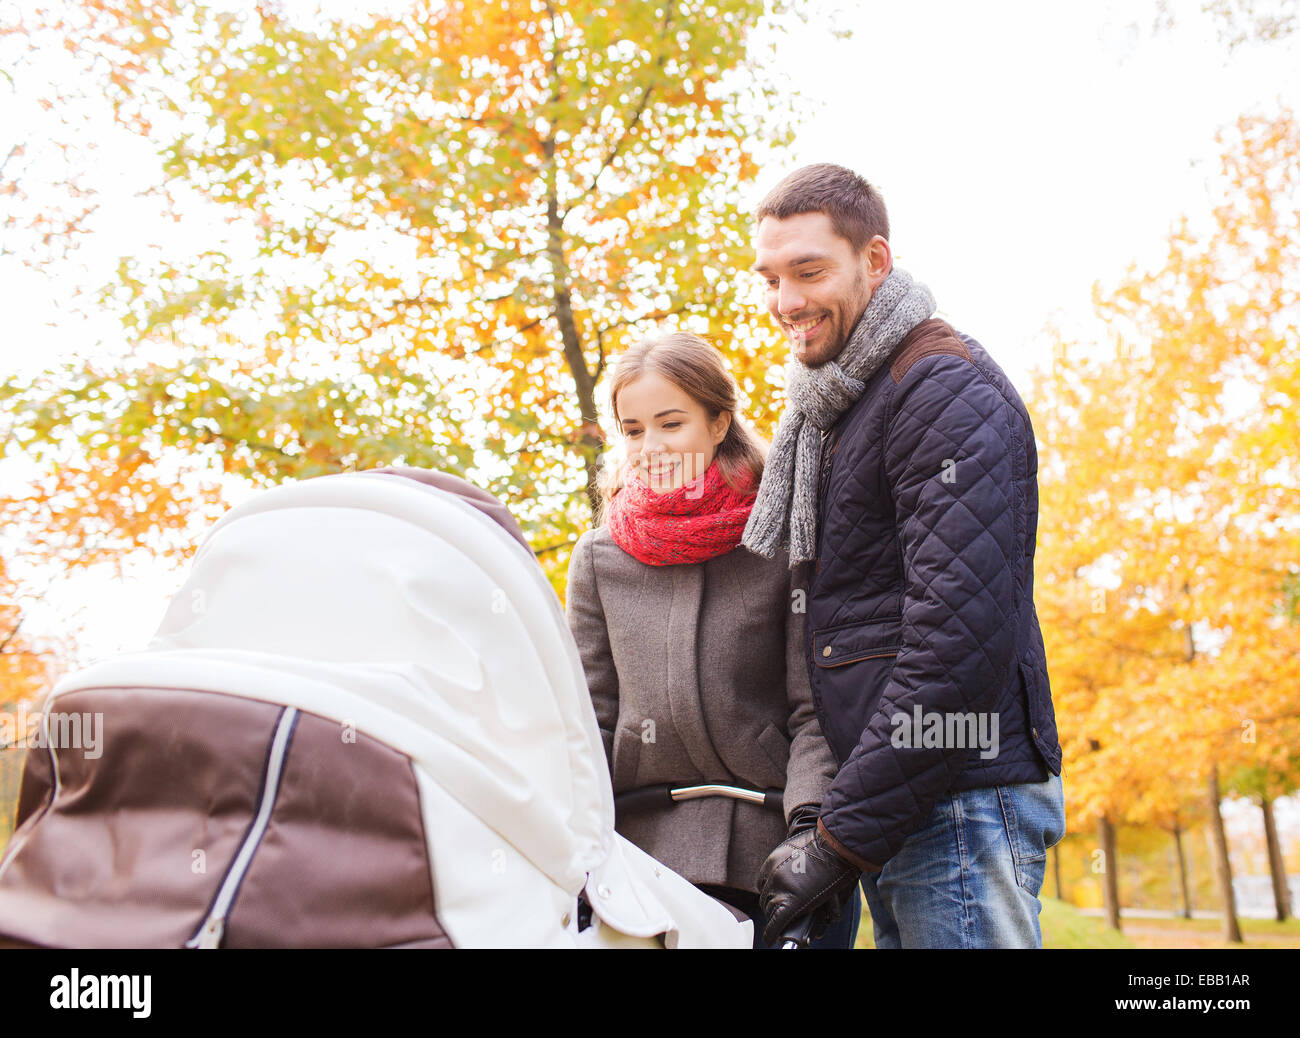 Smiling couple avec bébé la pram in autumn park Banque D'Images